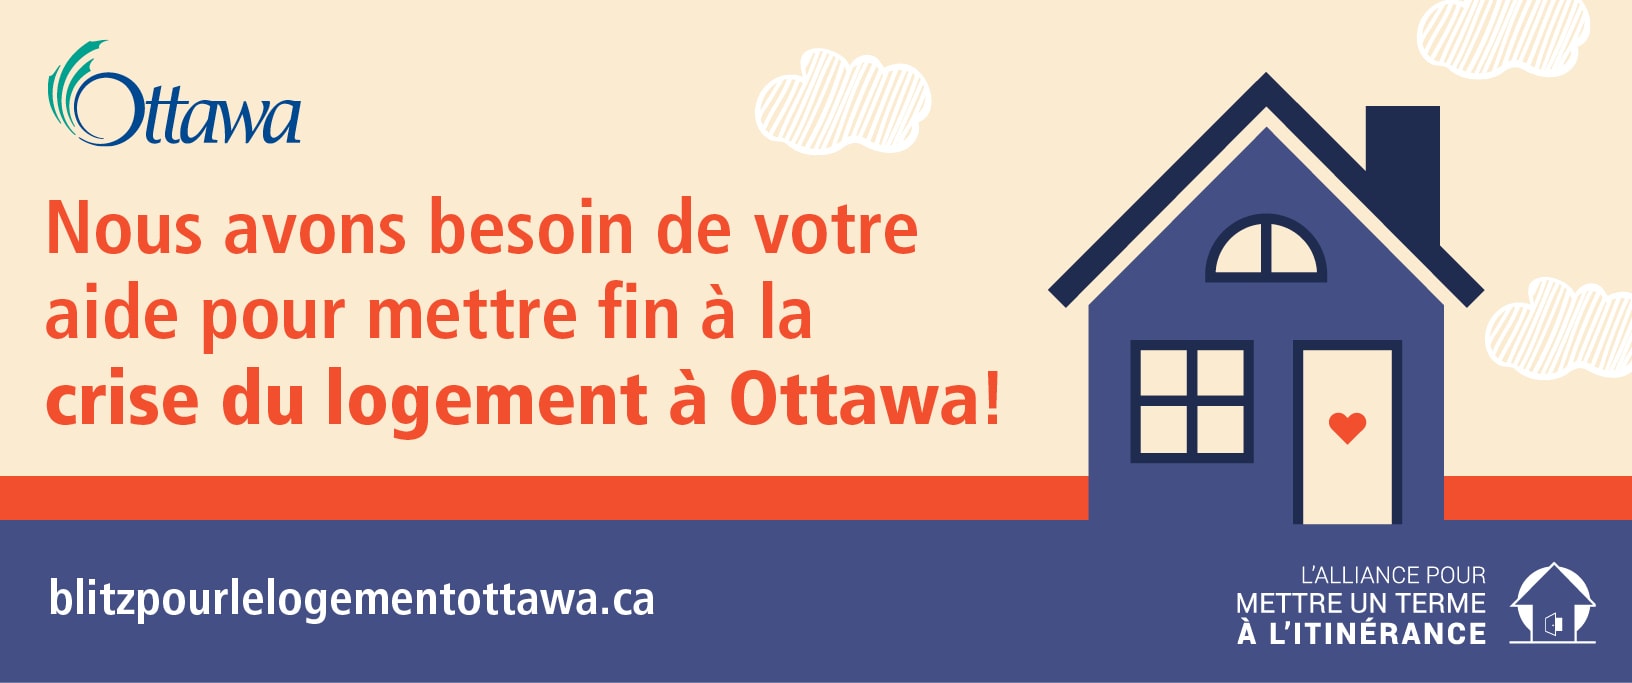 Nous avons besoin de votre aide pour mettre fin à la crise du logement à Ottawa!